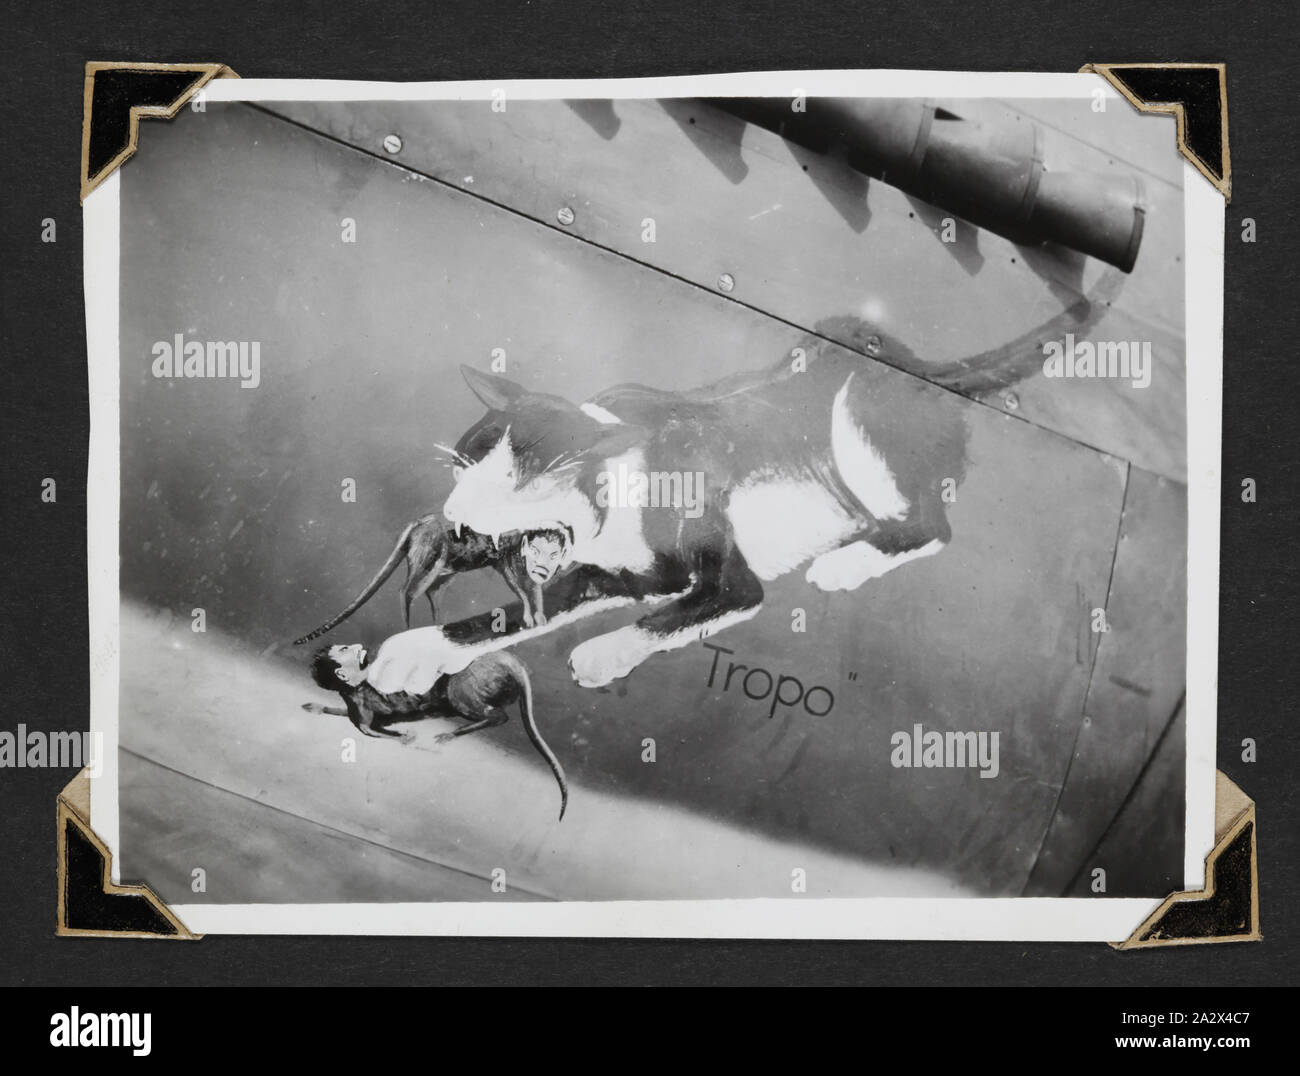 Foto - "Officers' Mess Cat', Neu Guinea, 1943, schwarz-weiß Foto von einem Gemälde von tropo Verwirrung des Offiziers, die Katze auf den Hafen Motorverkleidung einer P-40 Kittyhawk Flugzeug (nose art). Einer der 116 Fotos in einem Fotoalbum von Pilot Officer Colin Keon-Cohen. Dies sind sehr gute Bilder des Lebens in Singapur mit 205 Sqn RAF, dann 77 Sqn RAAF, Weltkrieg II. Stockfoto